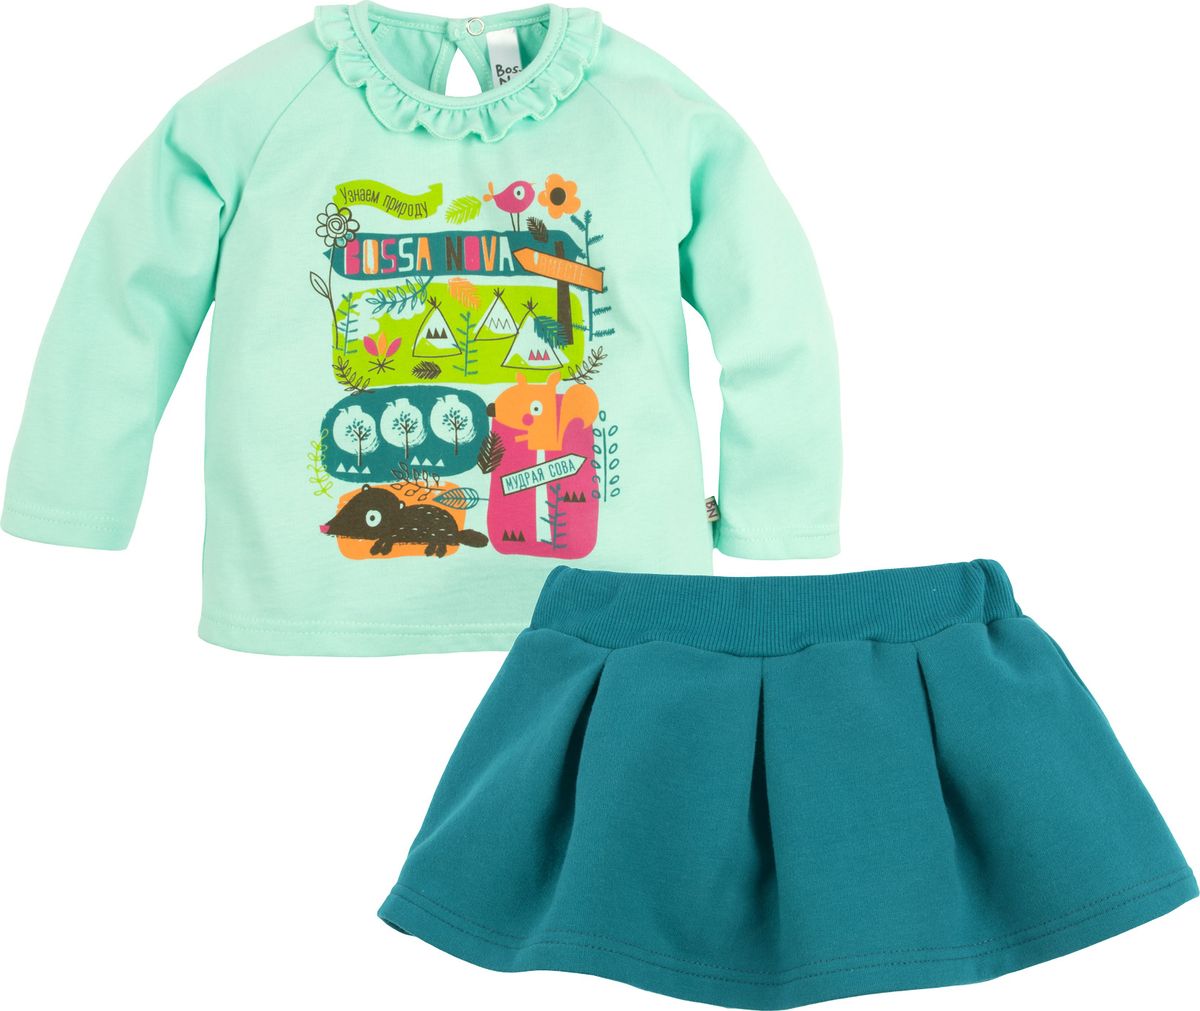 Комплект одежды детский Bossa Nova: джемпер, юбка, цвет: мятный, изумрудный. 080Б-161. Размер 74/80